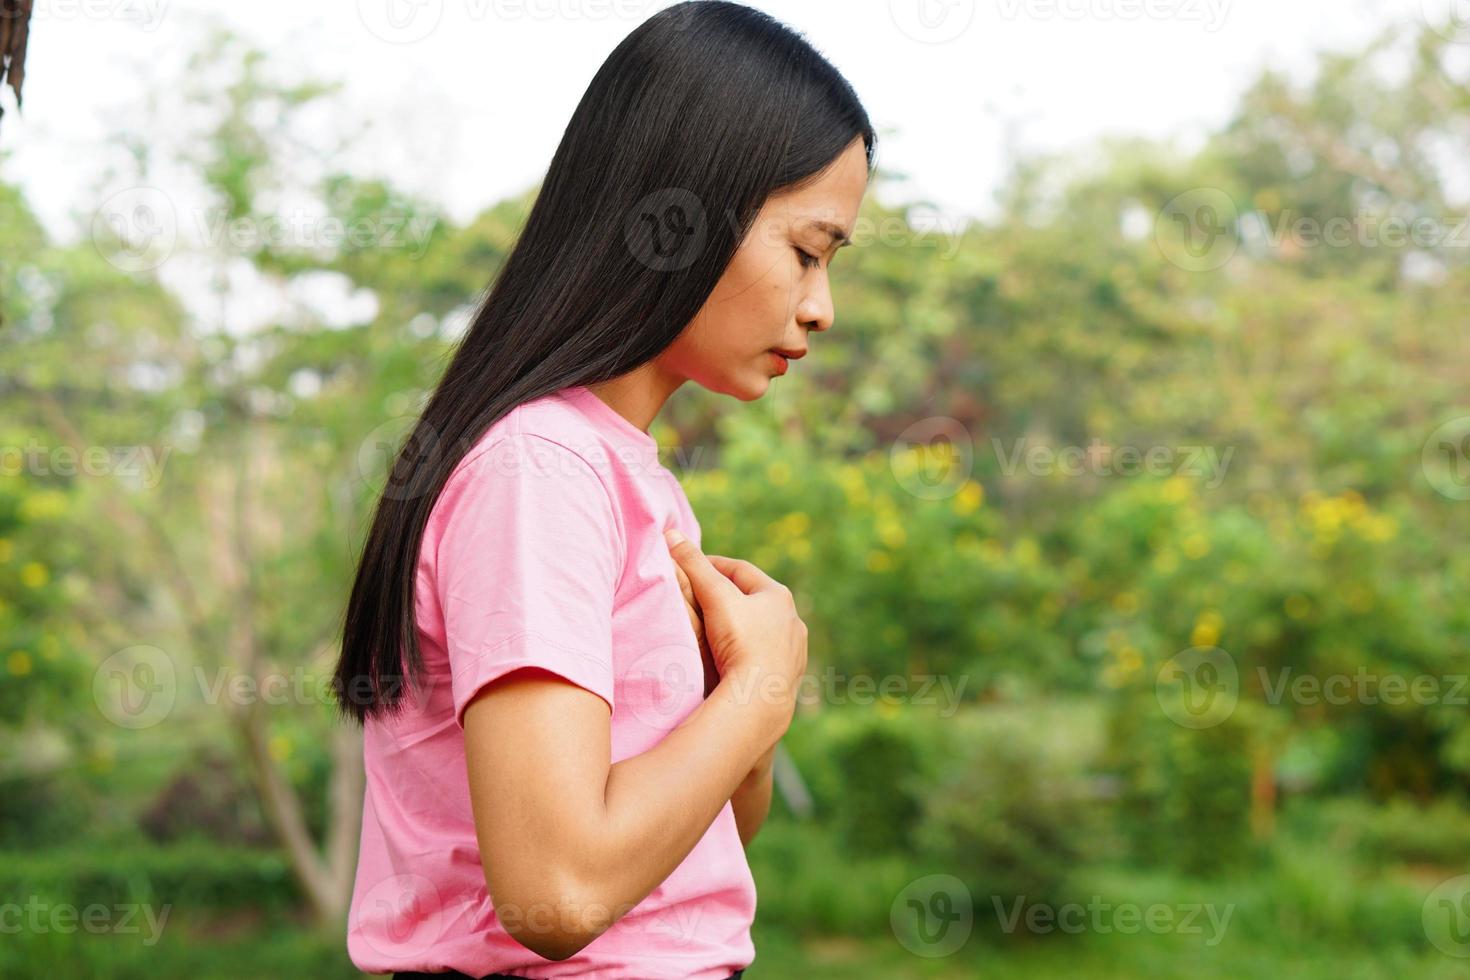 le donne asiatiche hanno senso di costrizione toracica. causato da malattie cardiache foto